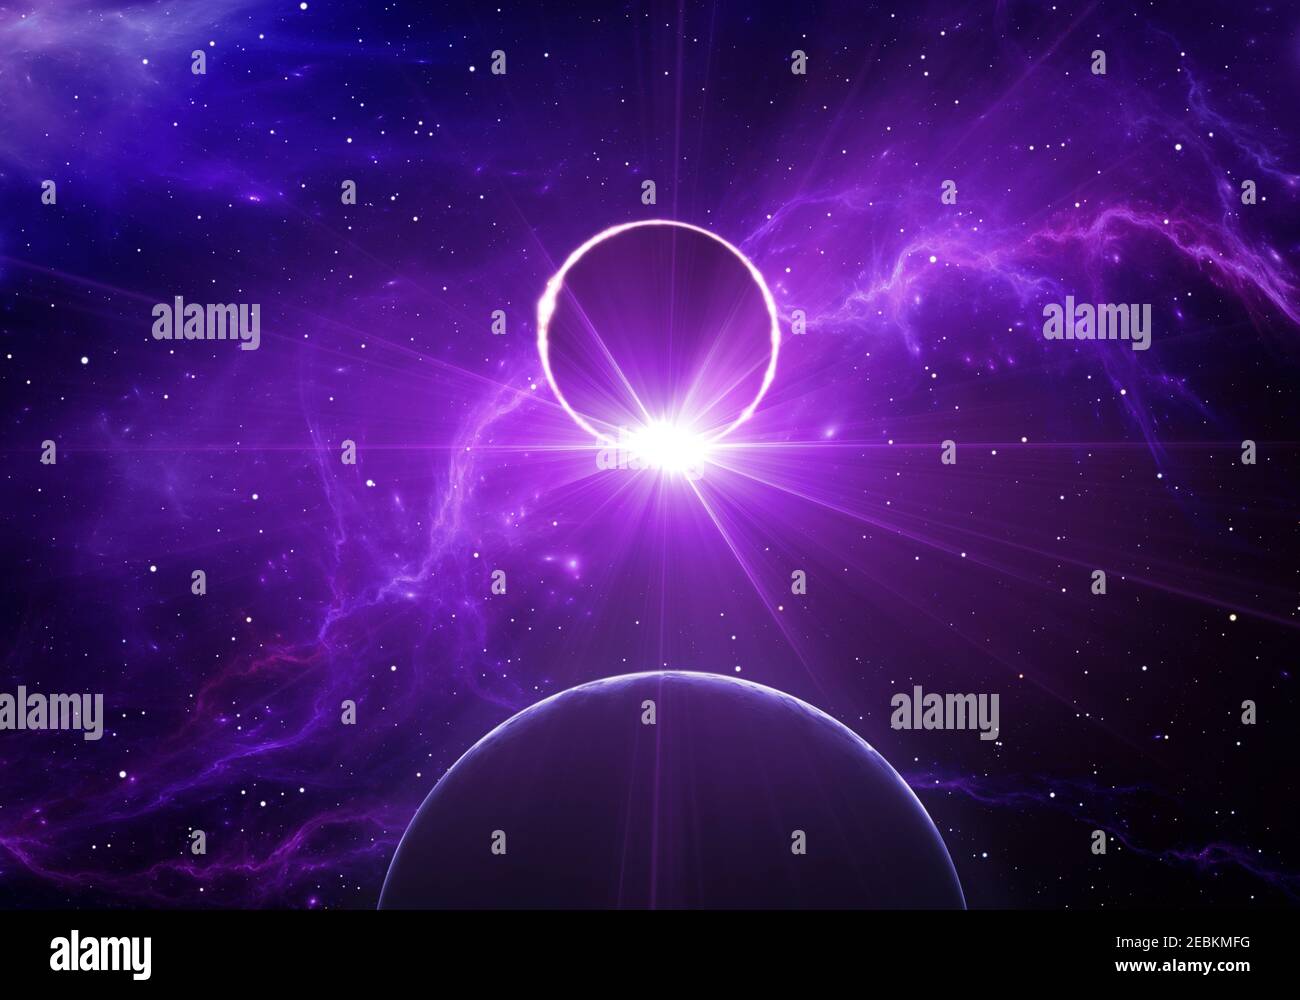 L'esoplanet passa davanti alla sua stella ospite in uno spazio profondo. Eclissi stellare. Da utilizzare con progetti su scienza, ricerca e istruzione. Illustrazione 3D Foto Stock